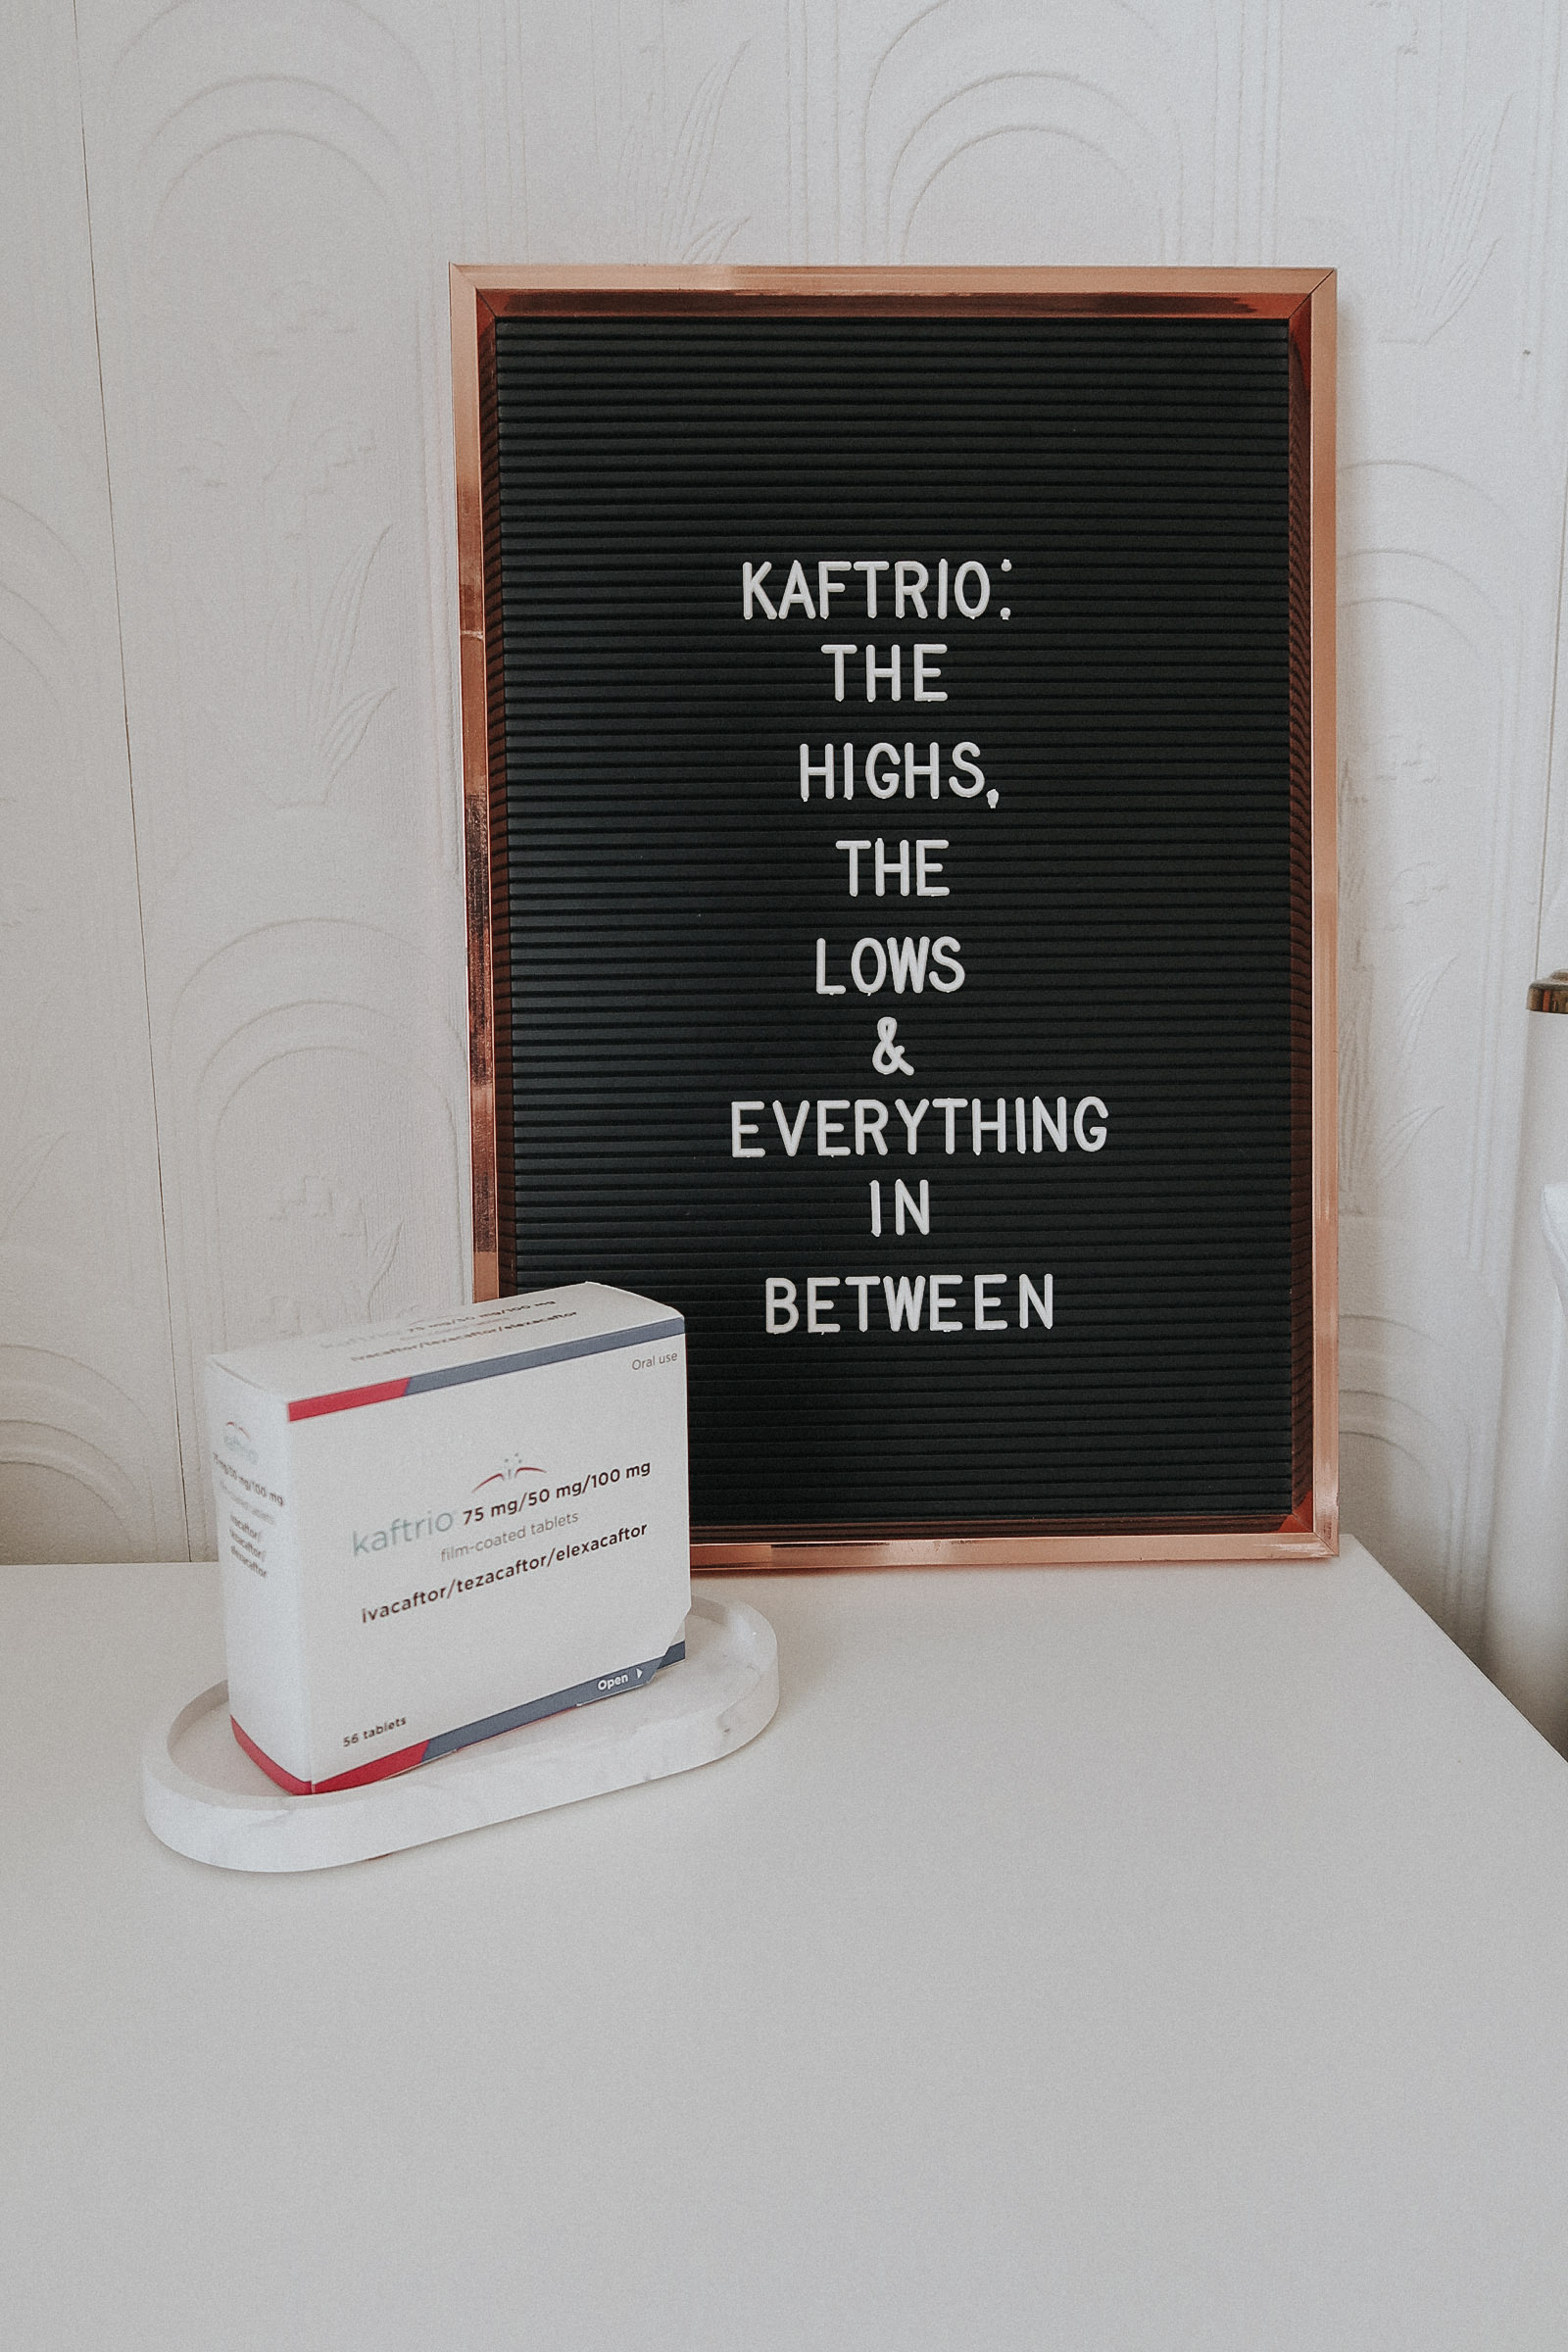 A box of Kaftrio next to a retro letter board.